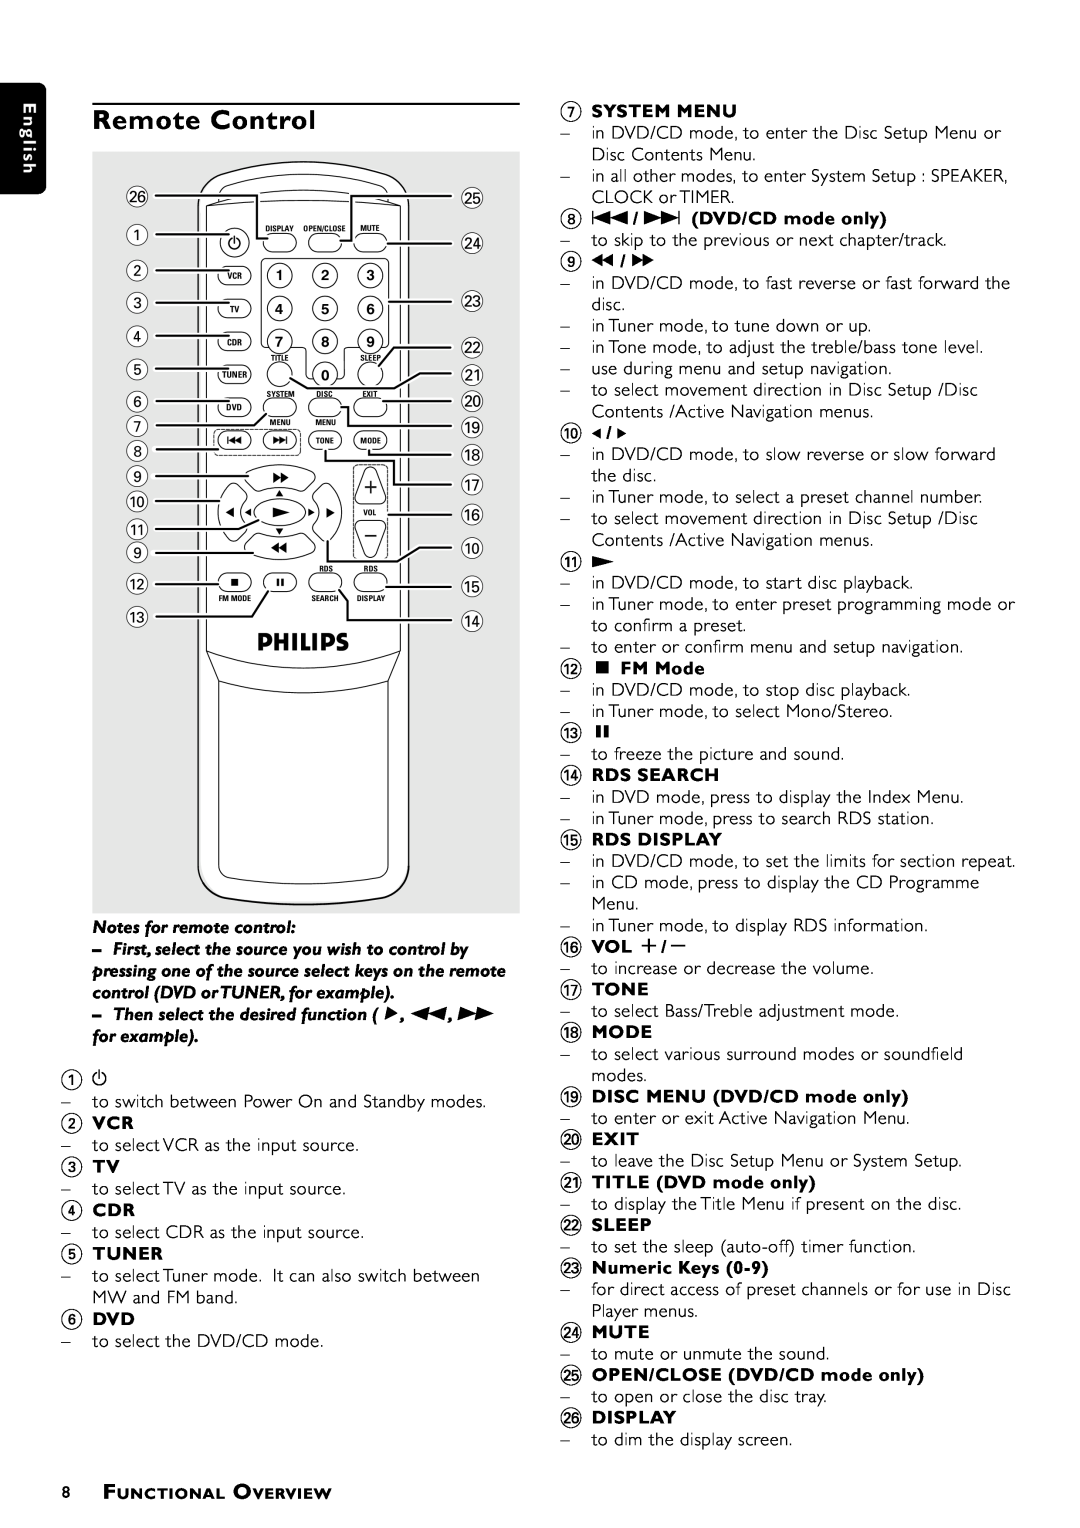 Philips MX-1060D, MX-1050D manual Remote Control 